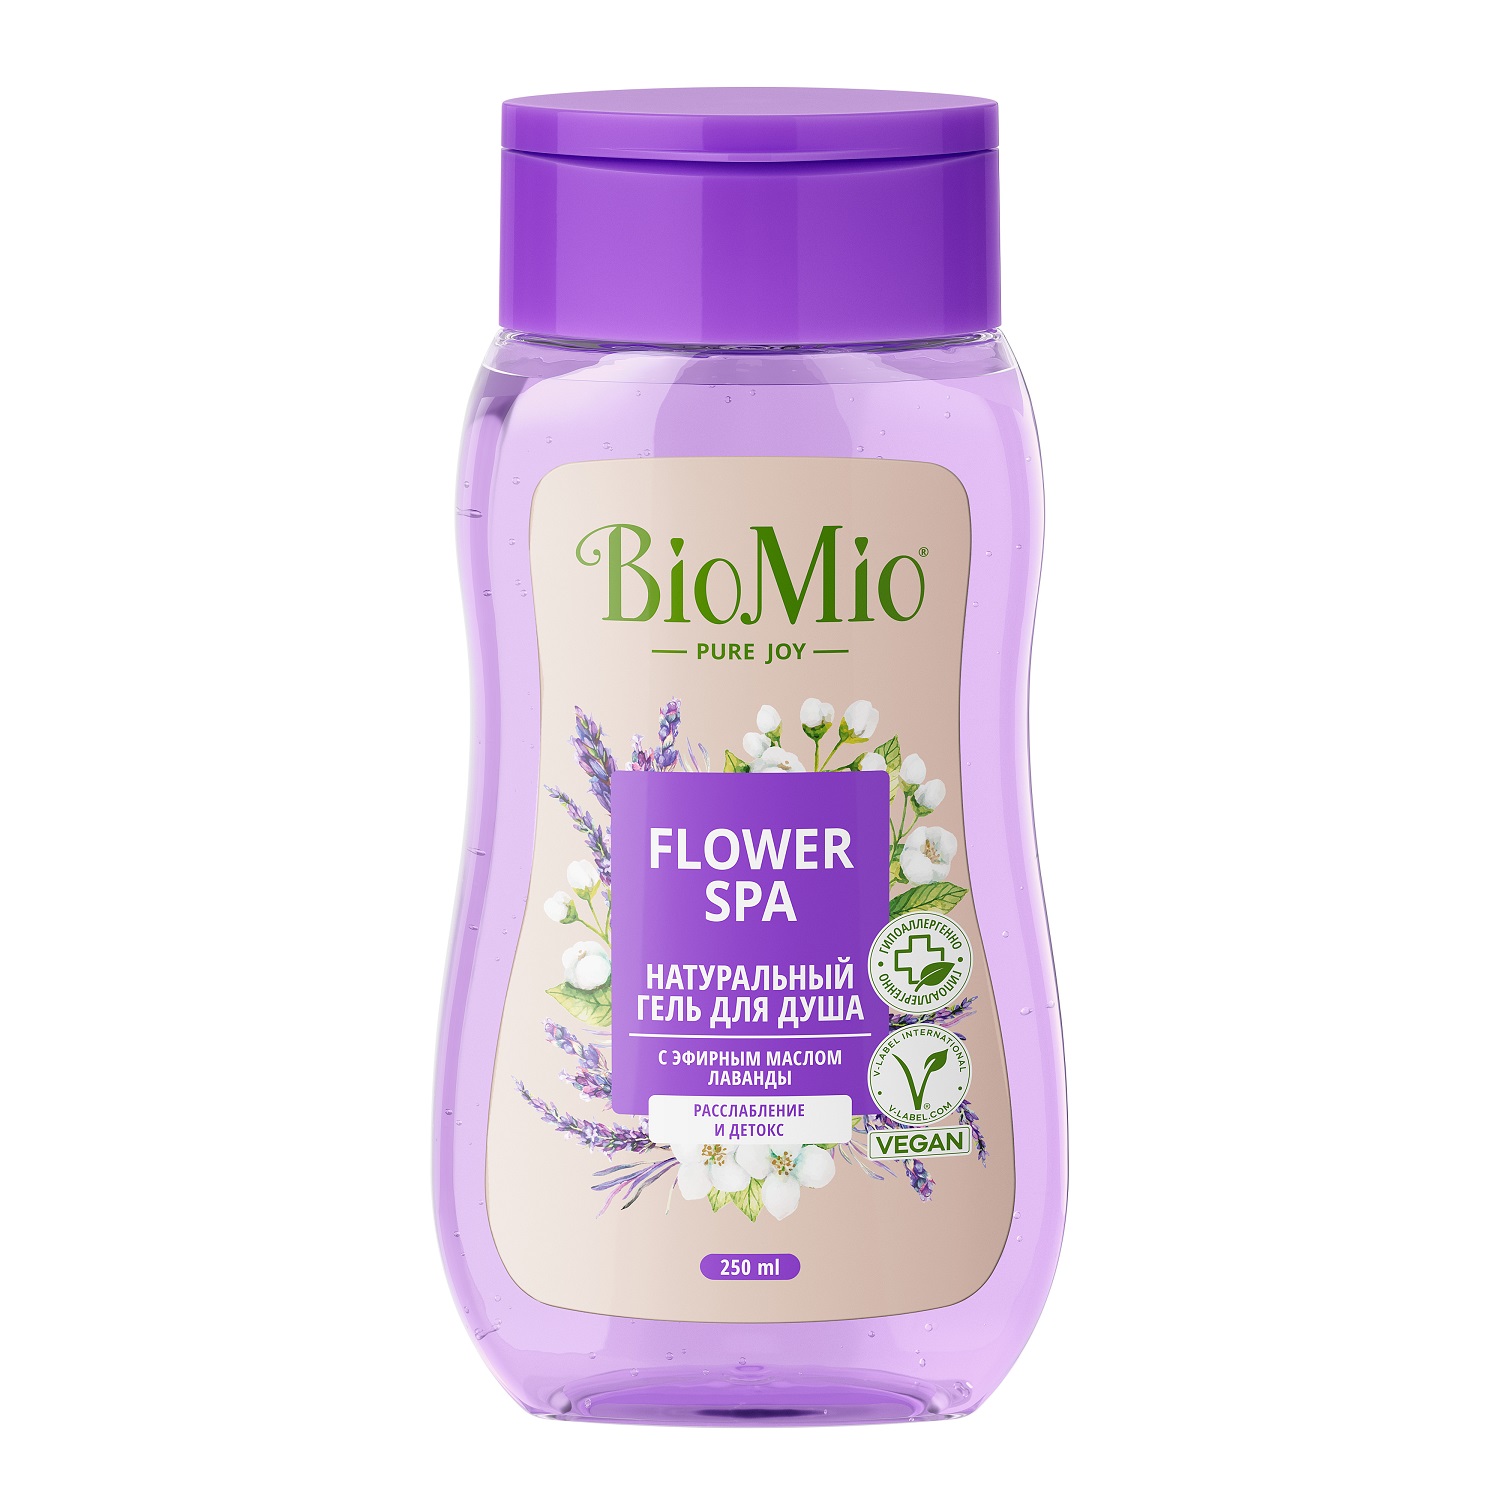 BioMio Гель для душа с эфирными маслами лаванды Flower Spa 3+, 250 мл (BioMio, Для ванны и душа)